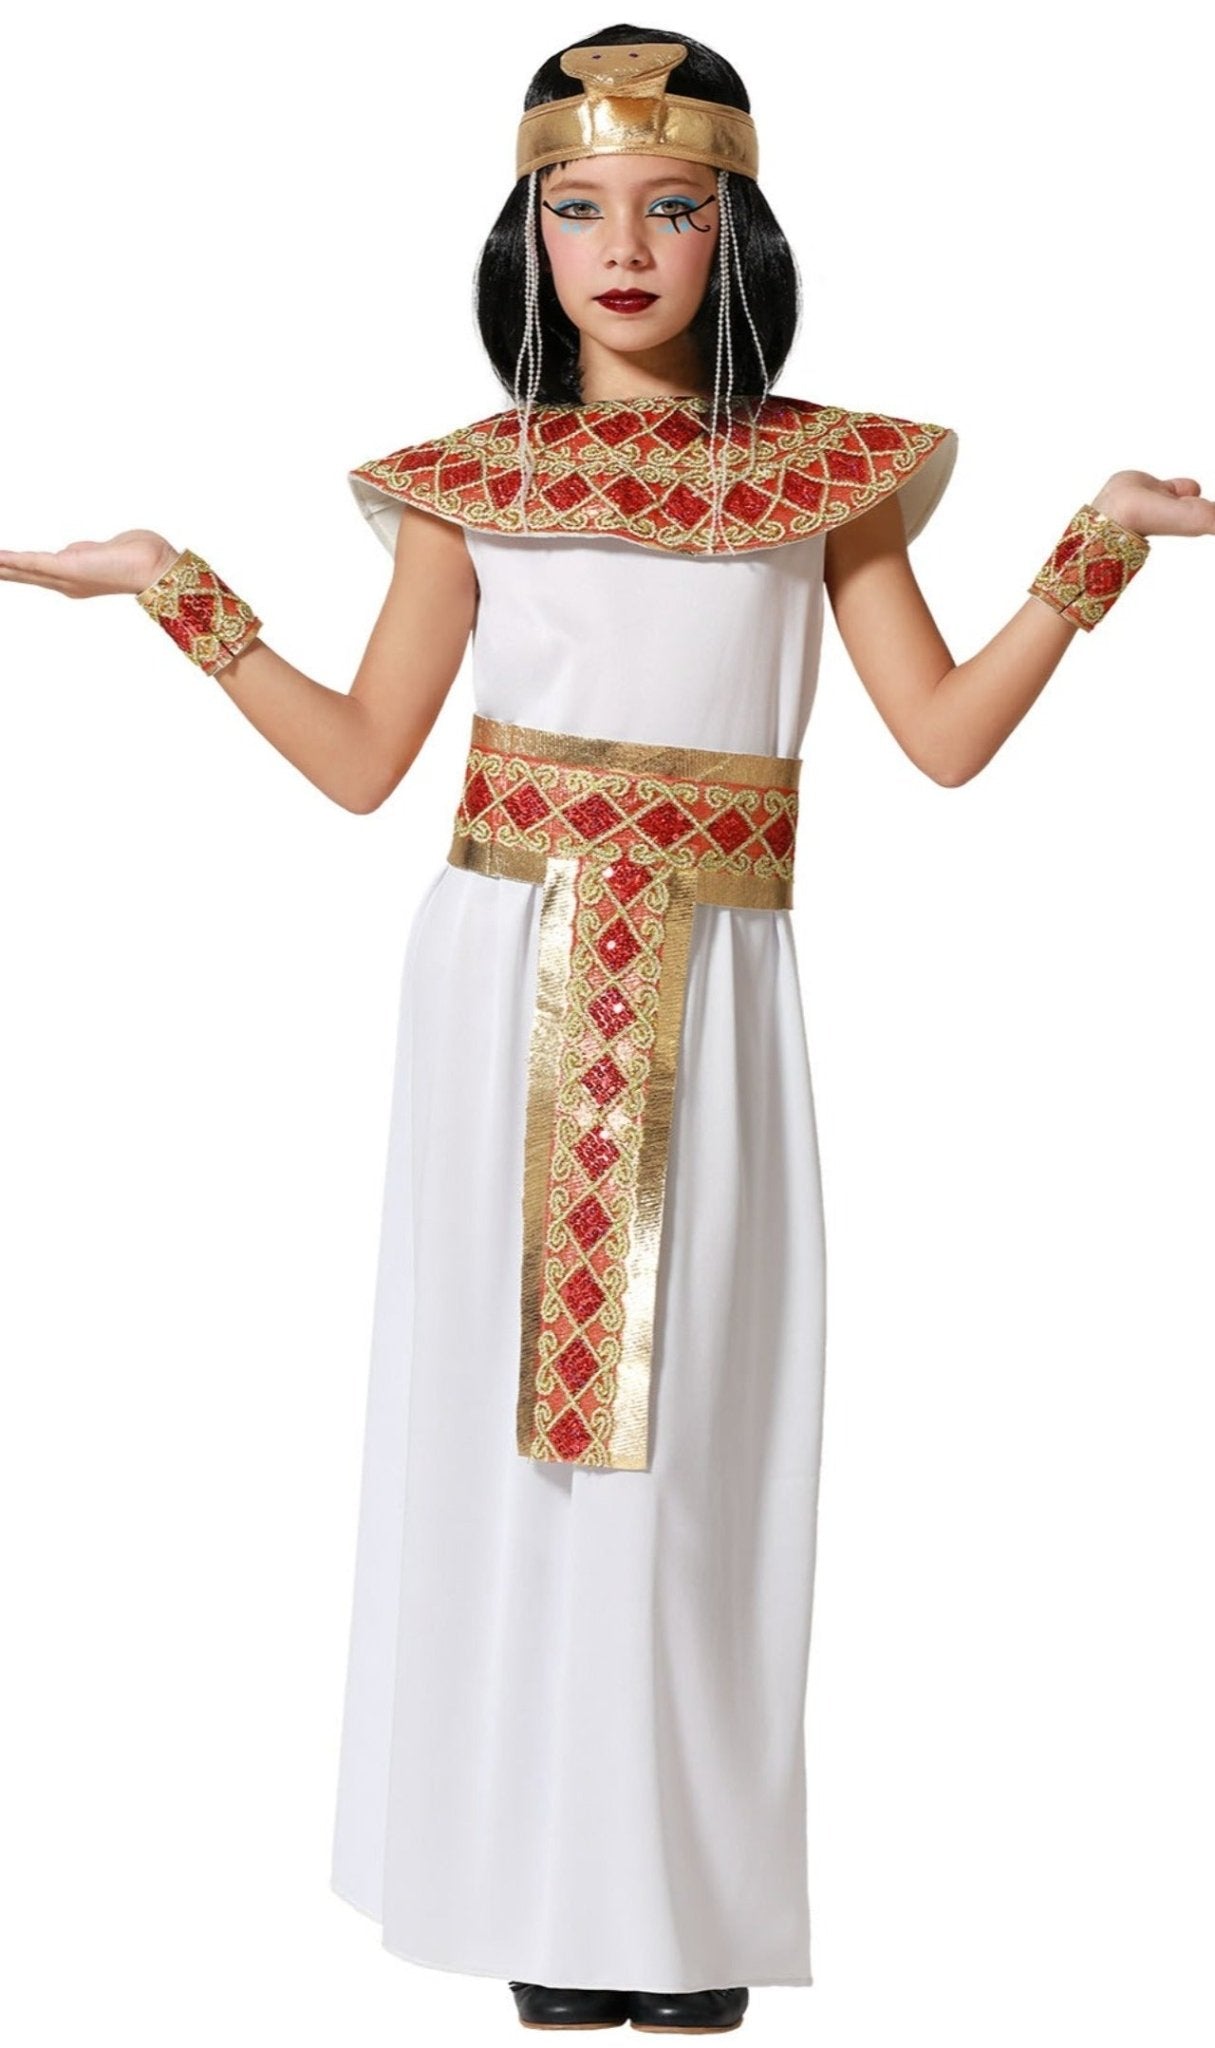 Costume e trucco da EGIZIANA/O fai da te - Costume, Trucco e Accessori